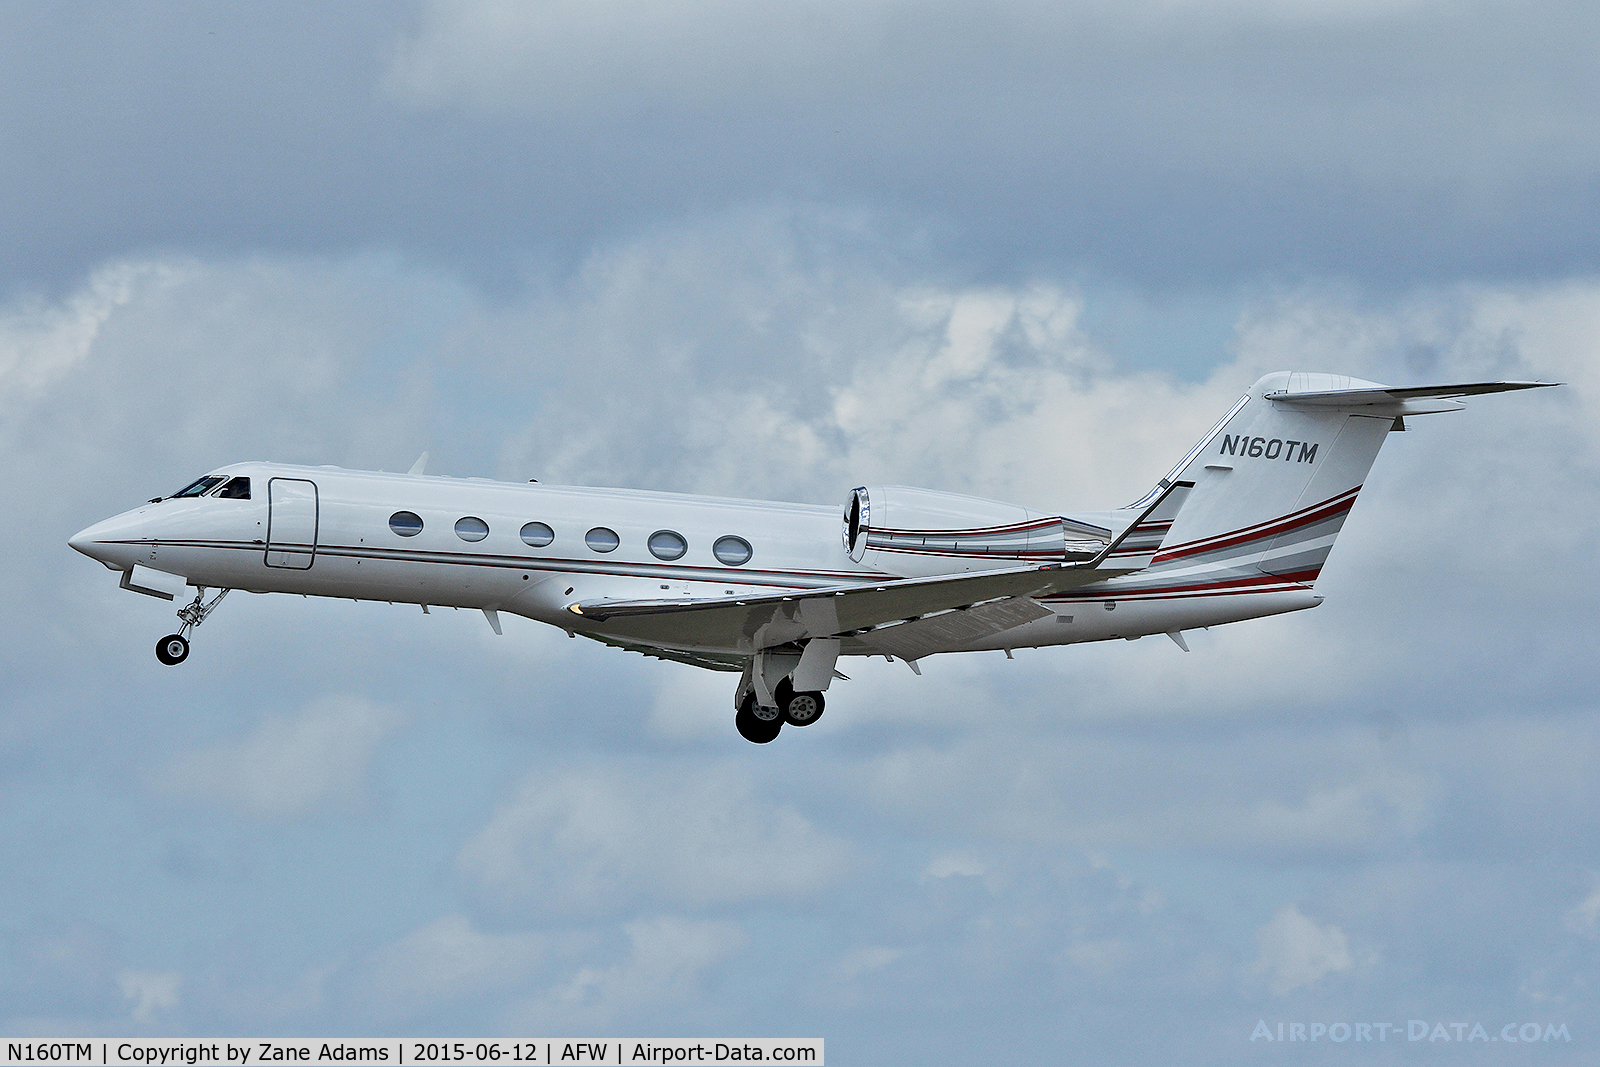 N160TM, 2004 Gulfstream Aerospace G-IV C/N 1526, At Alliance Airport - Fort Worth, TX